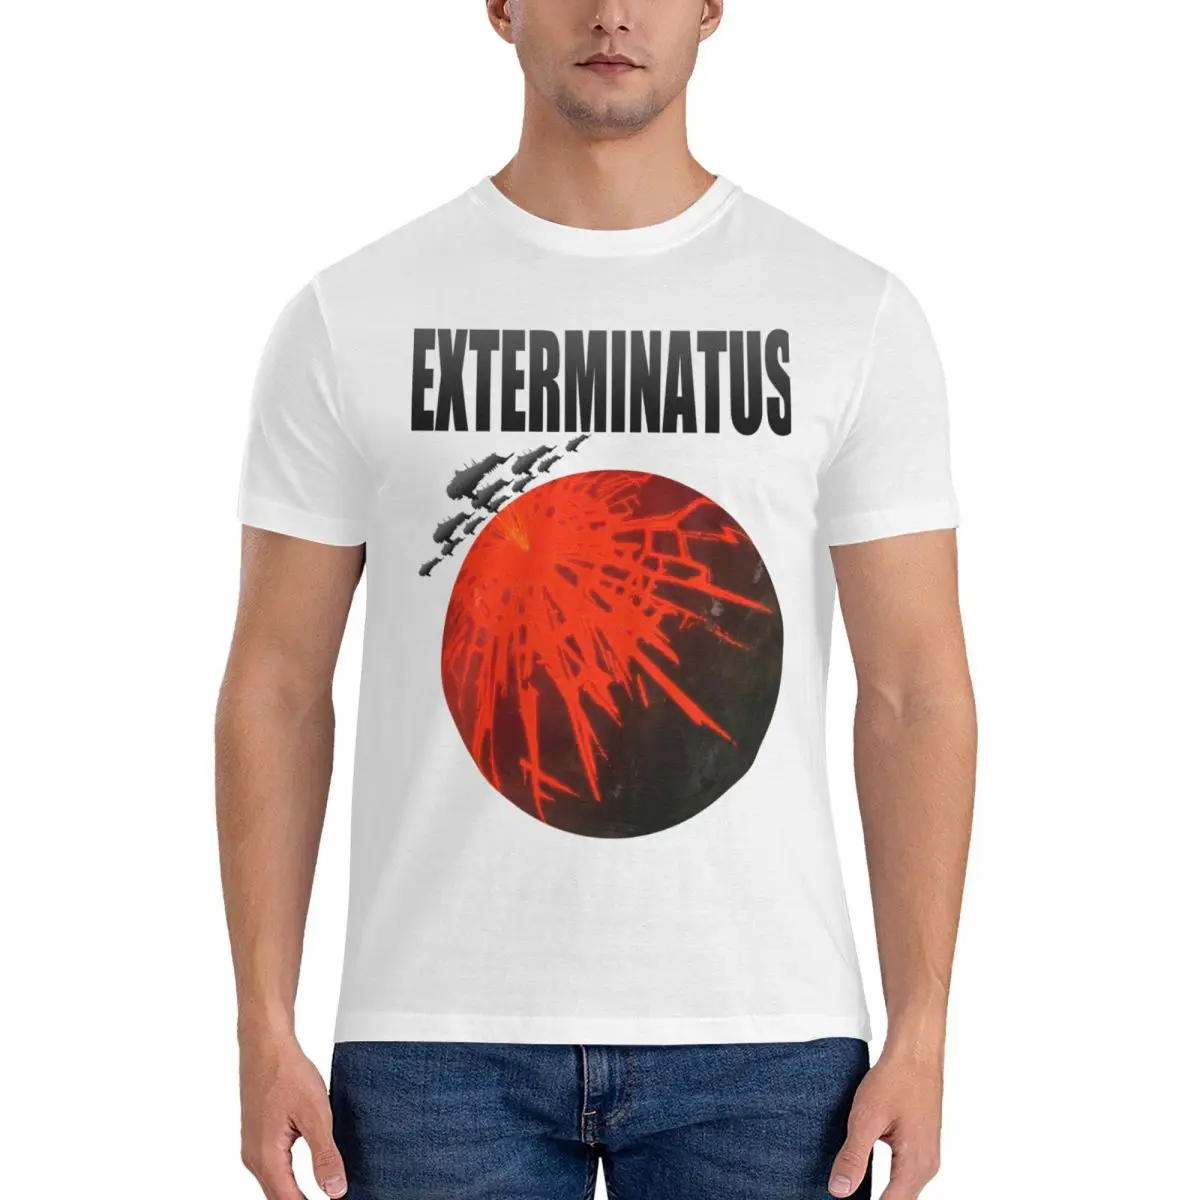 Футболка Exterminatus Title Essential, мужские облегающие футболки для мужчин, милые топы